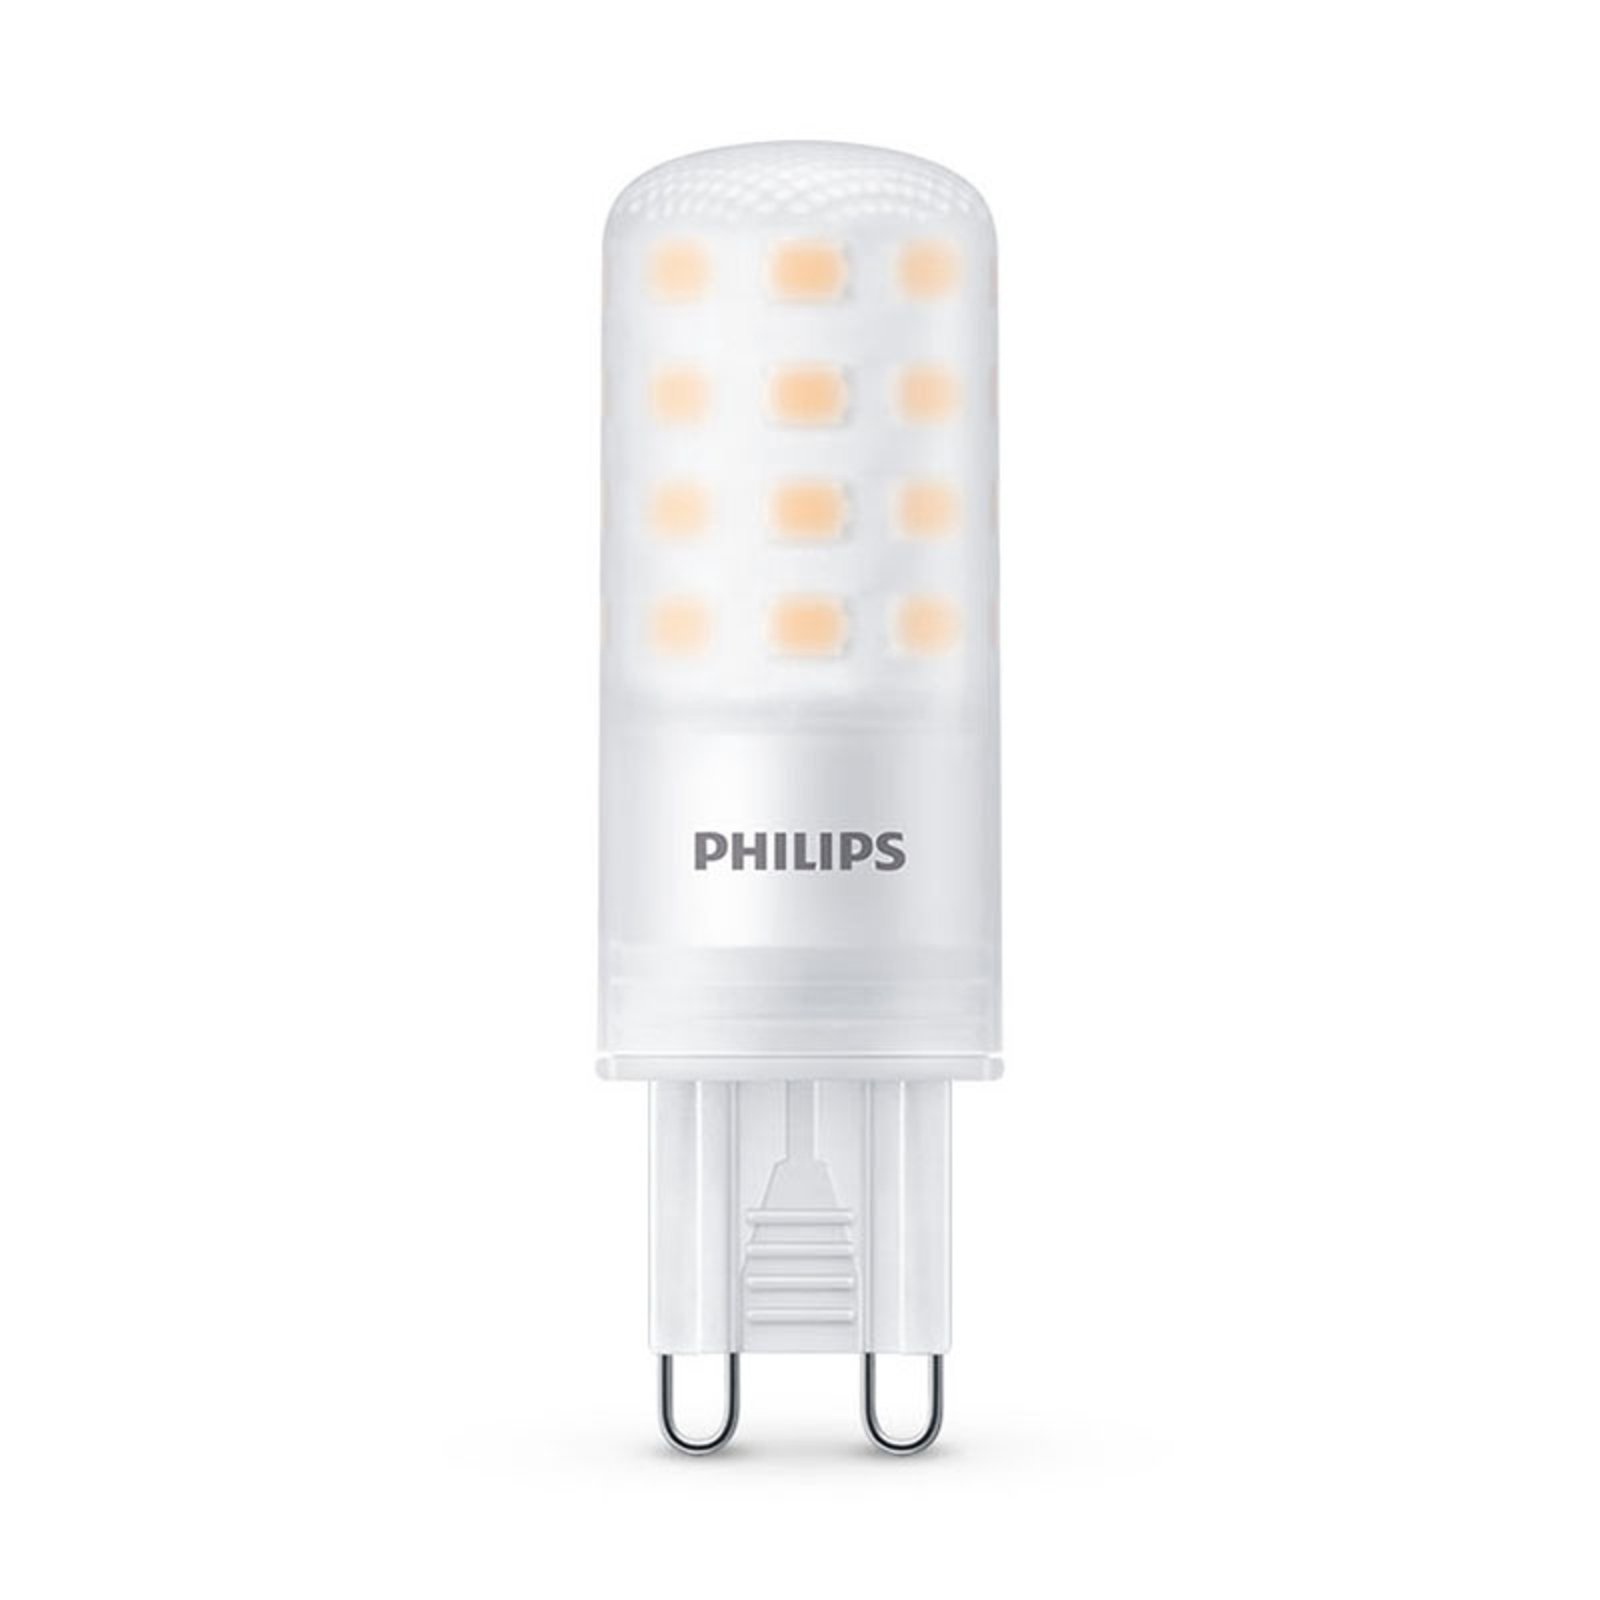 Philips LED bi-pin G9 4W 2.700K mate atenuable